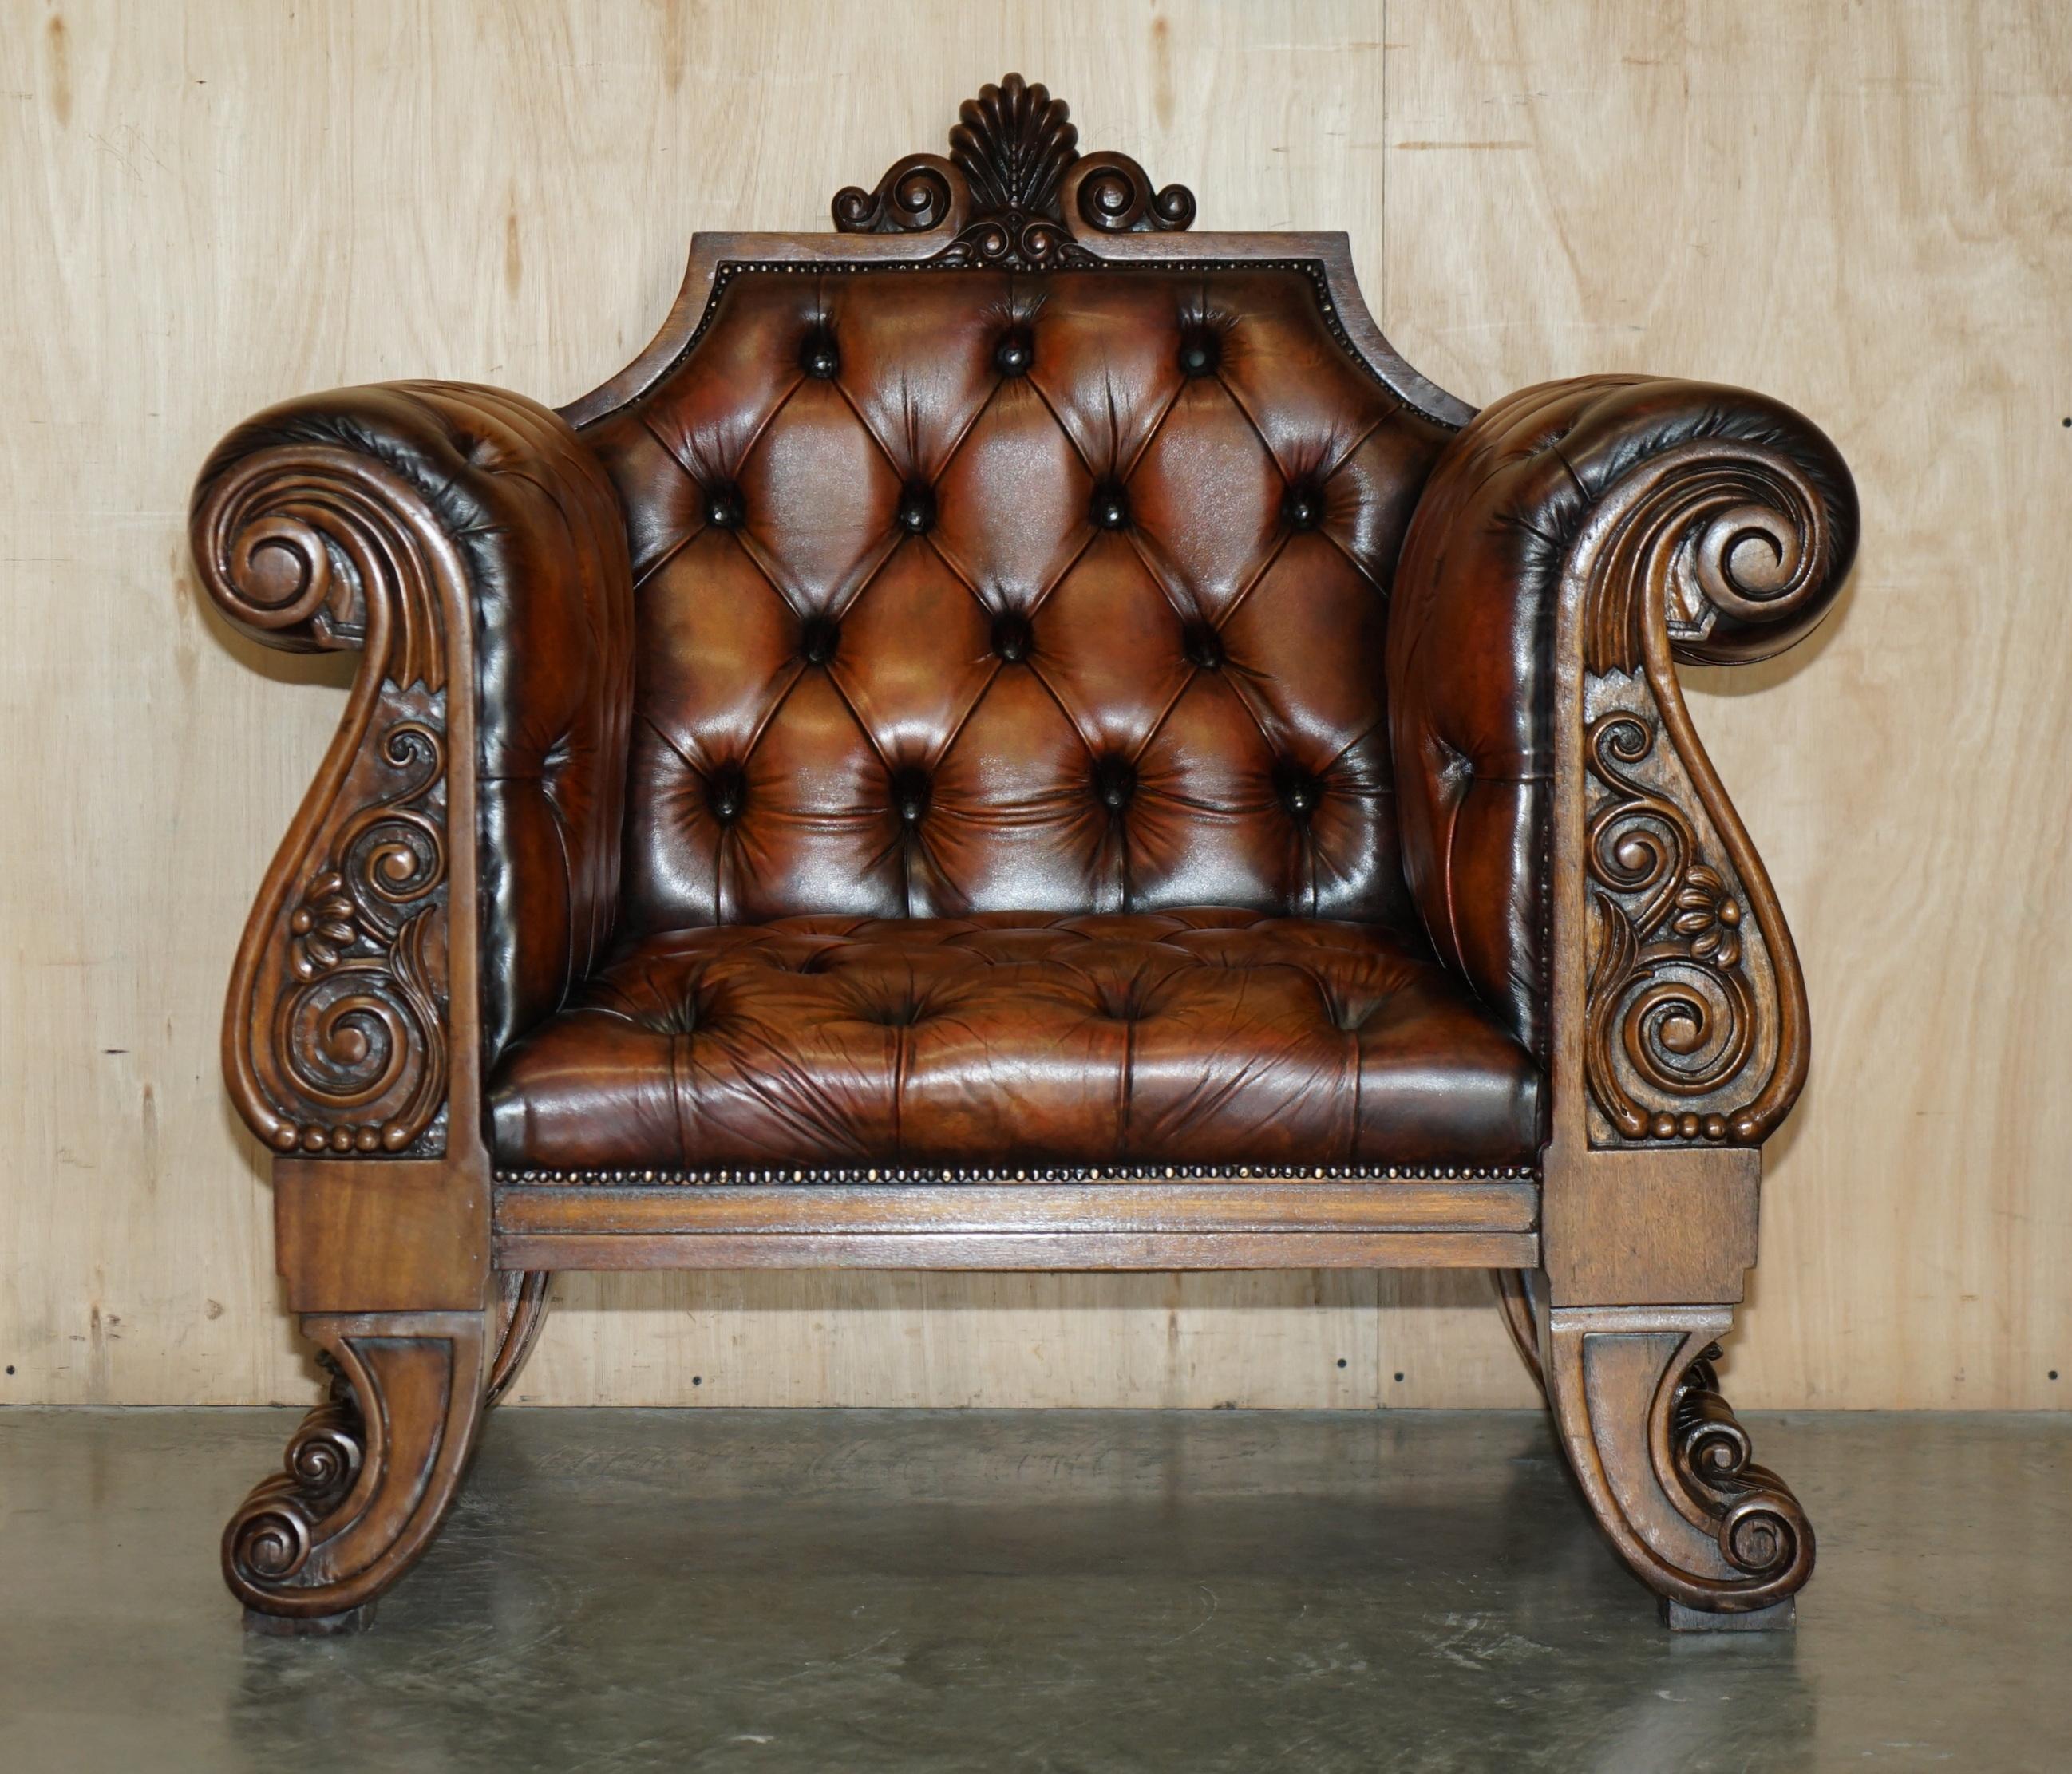 Royal House Antiques

The House of Antiques a le plaisir d'offrir à la vente ce fauteuil exceptionnellement rare, fait sur mesure et entièrement restauré vers 1900-1920 en cuir Chesterfield brun cigare, teinté à la main, pour un roi ou une reine.